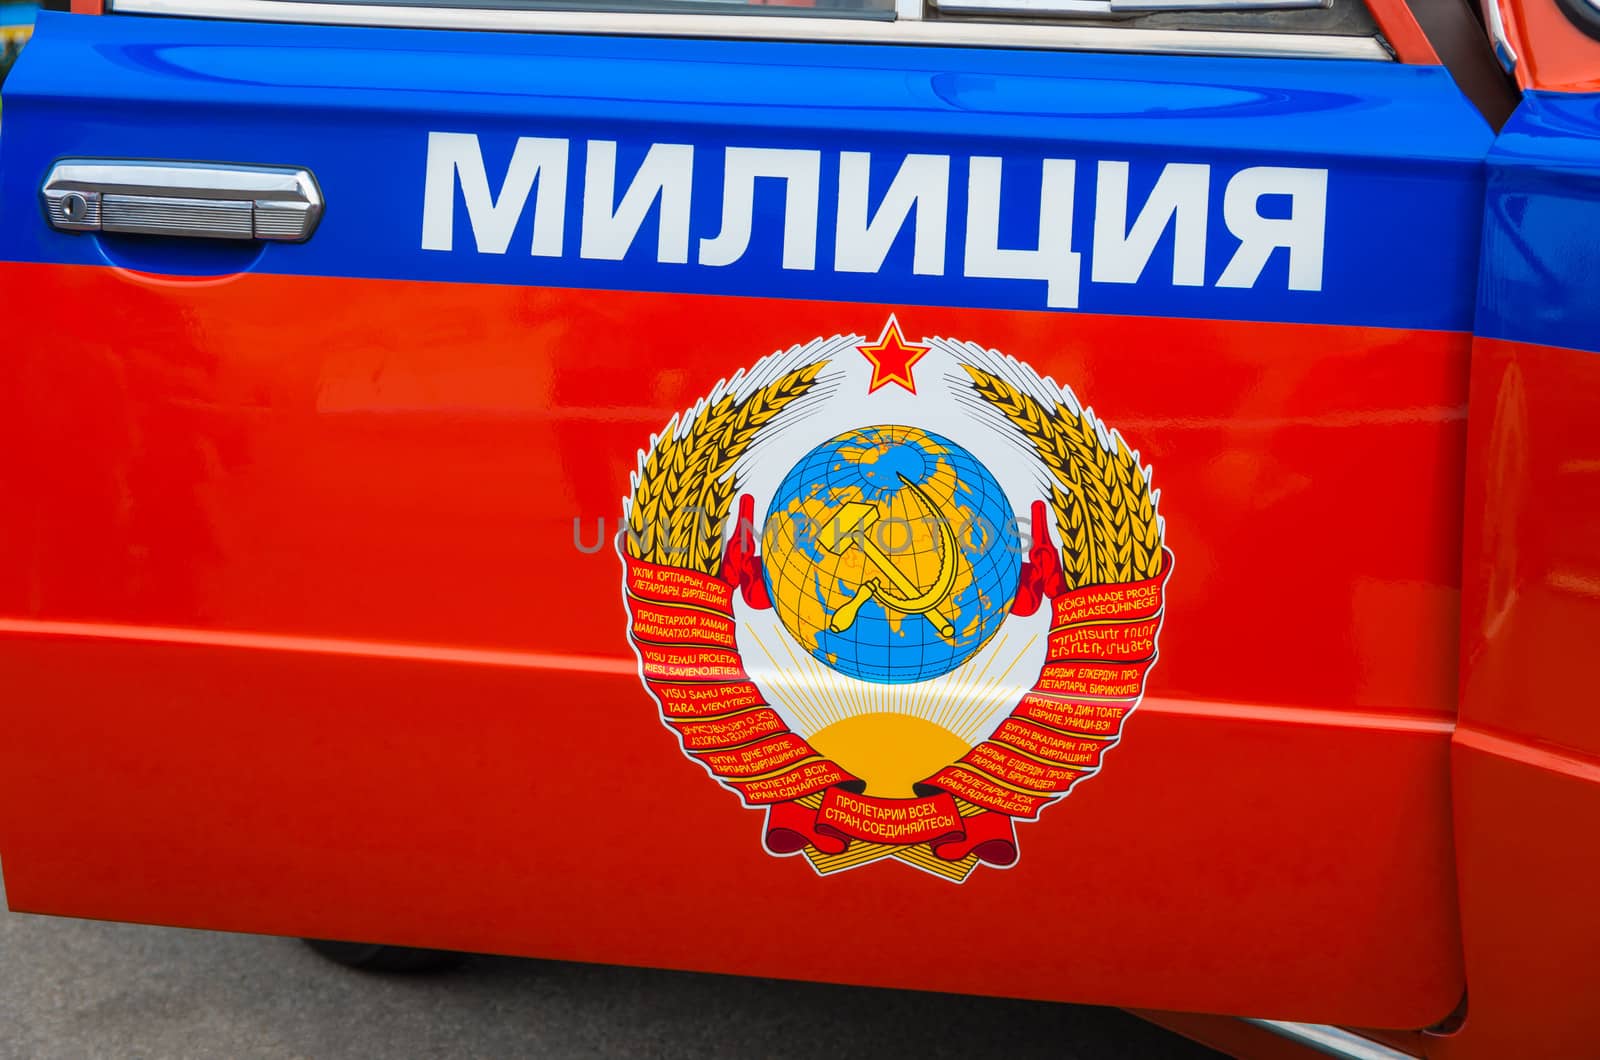 Police militia car by myyayko